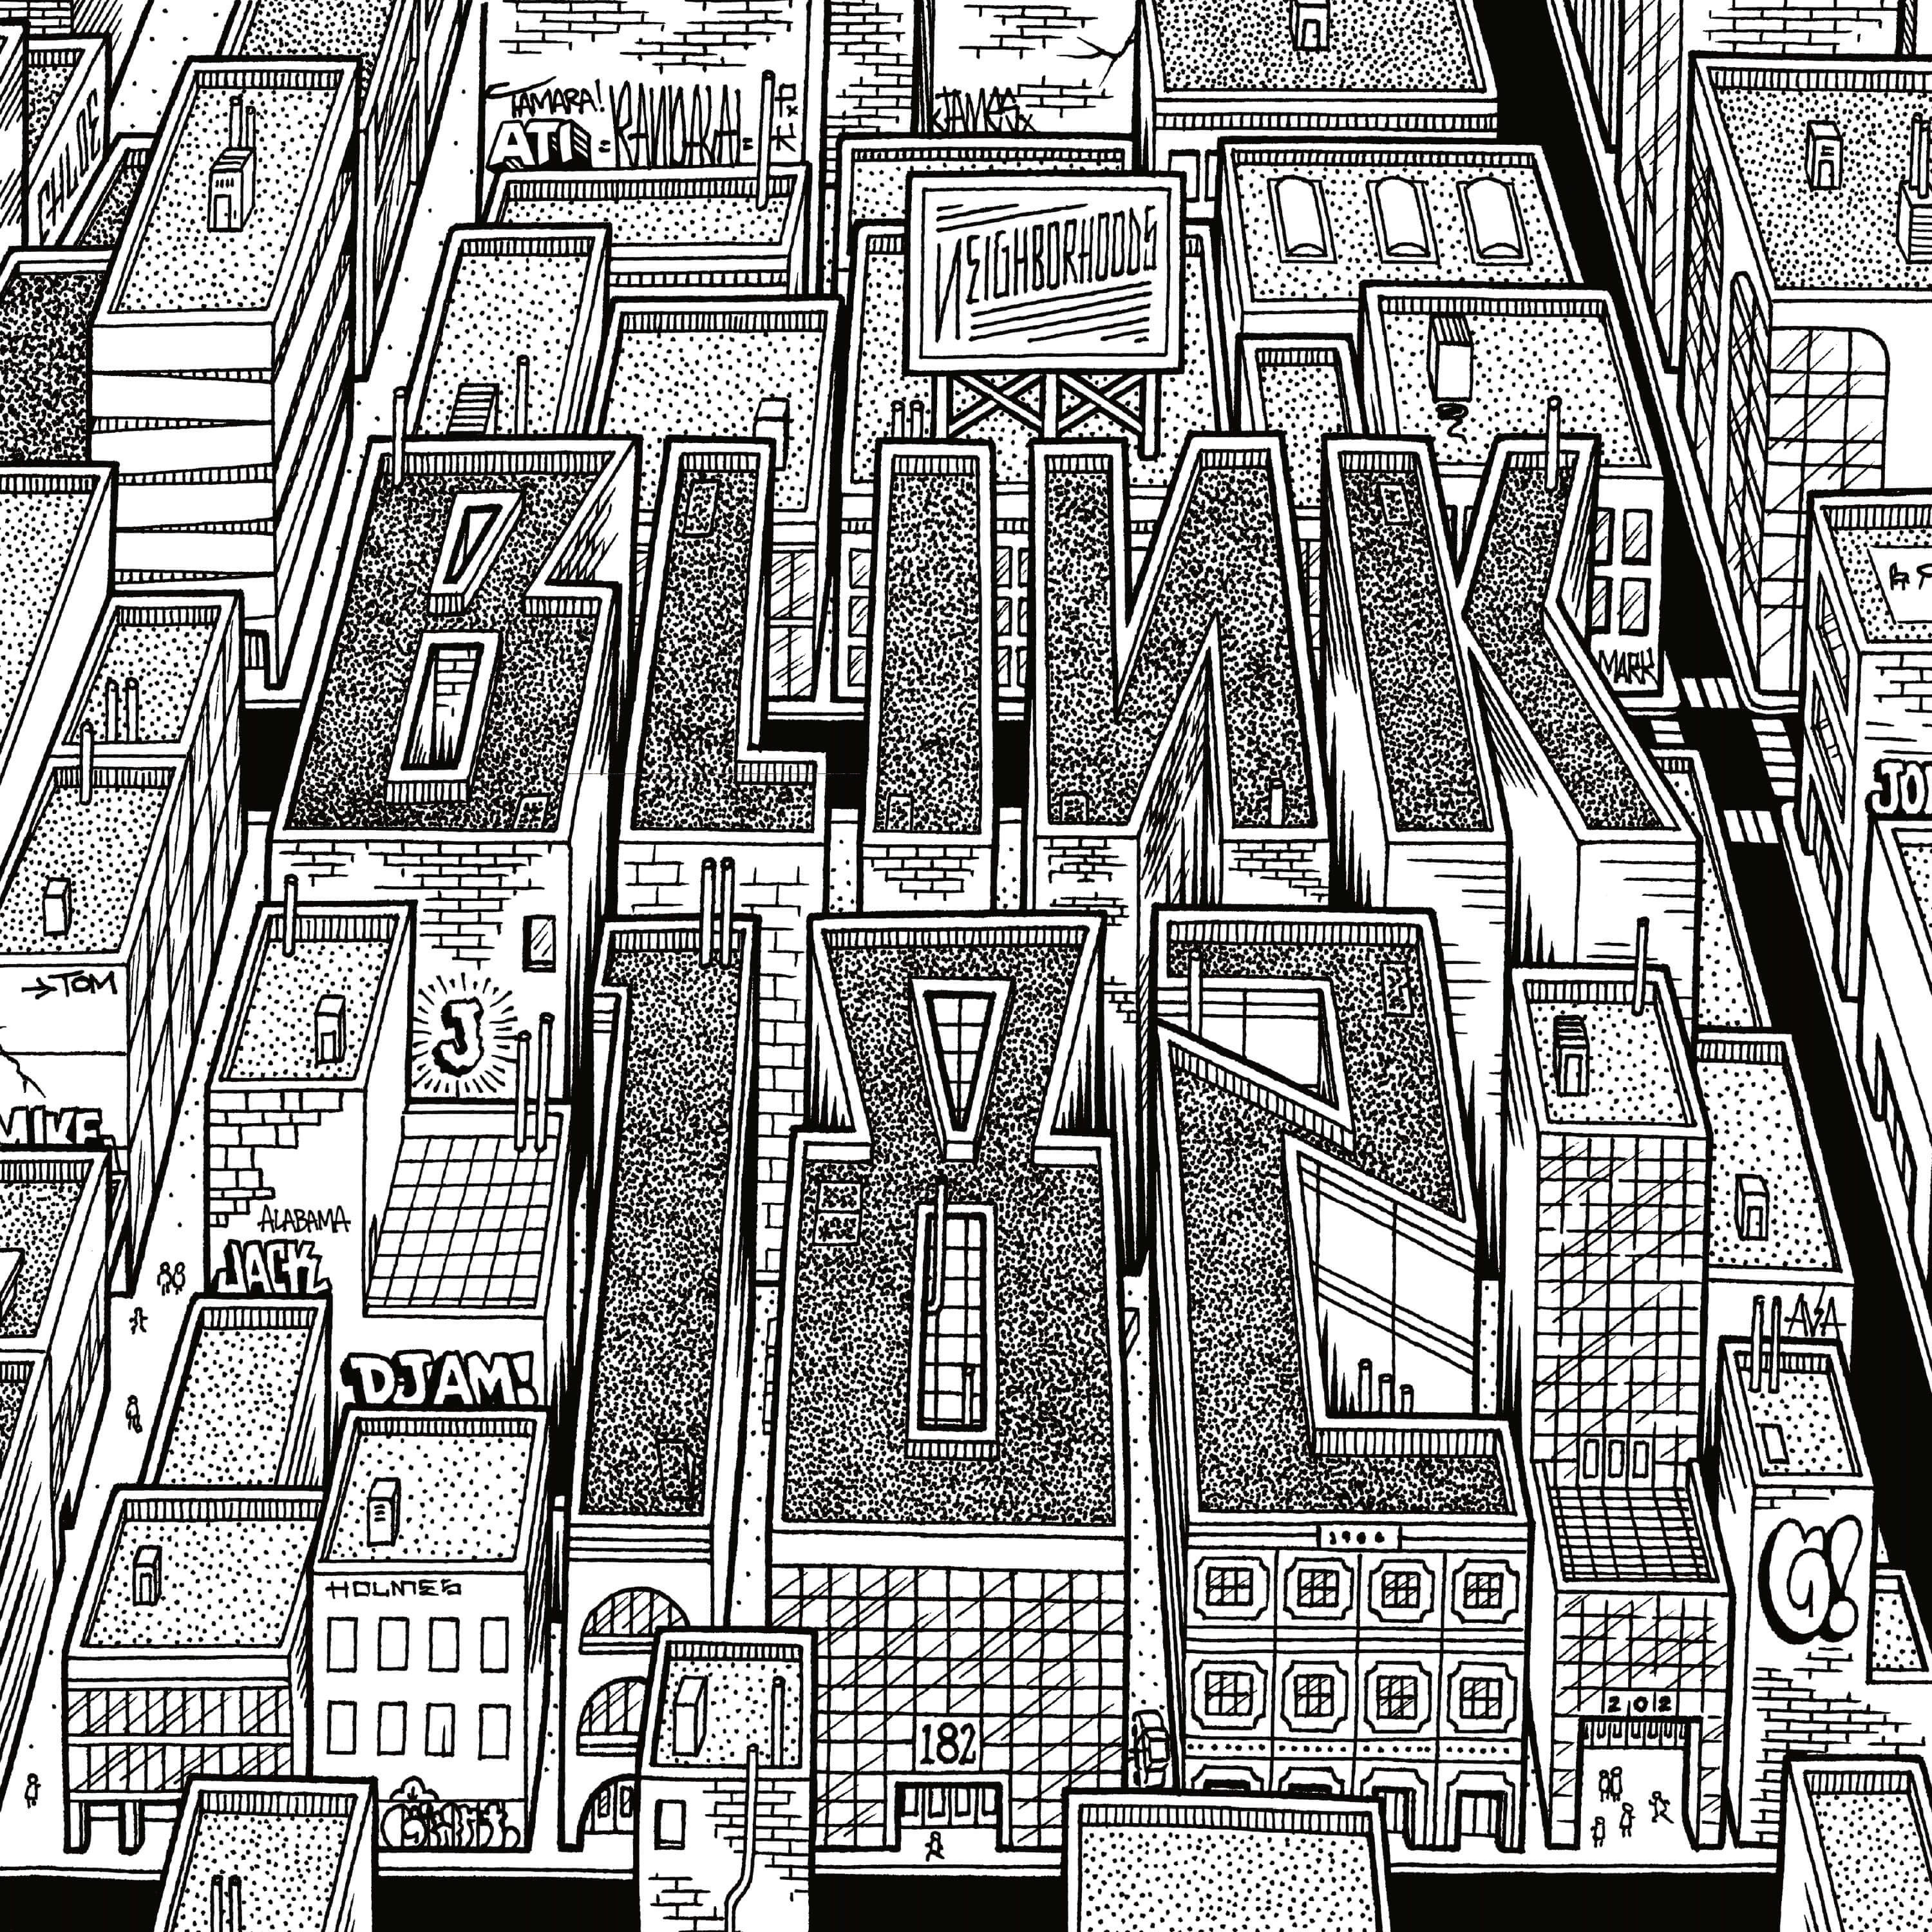 Blink 182 - Neighborhoods 2XLP